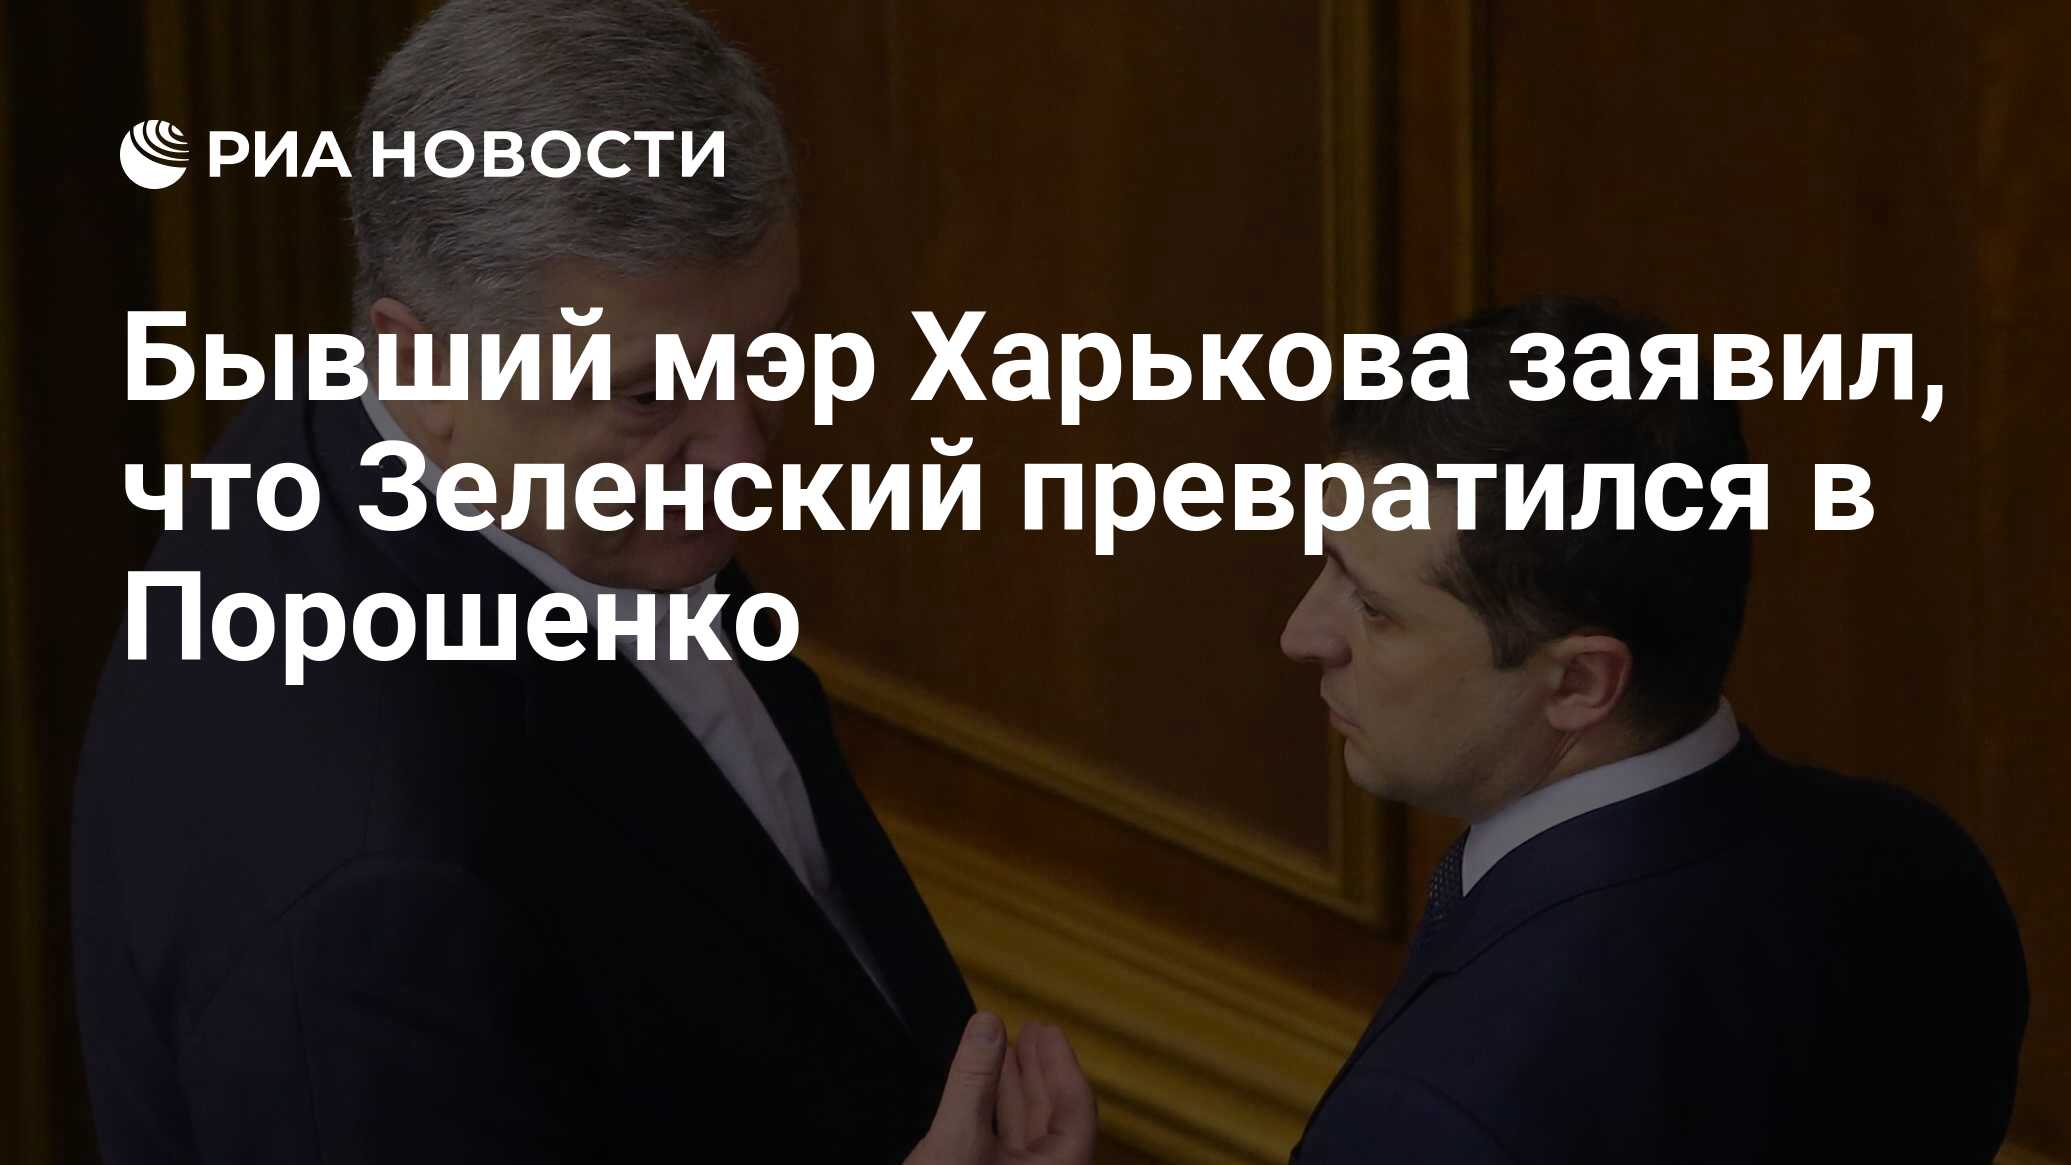 Бывший мэр Харькова заявил, что Зеленский превратился в Порошенко